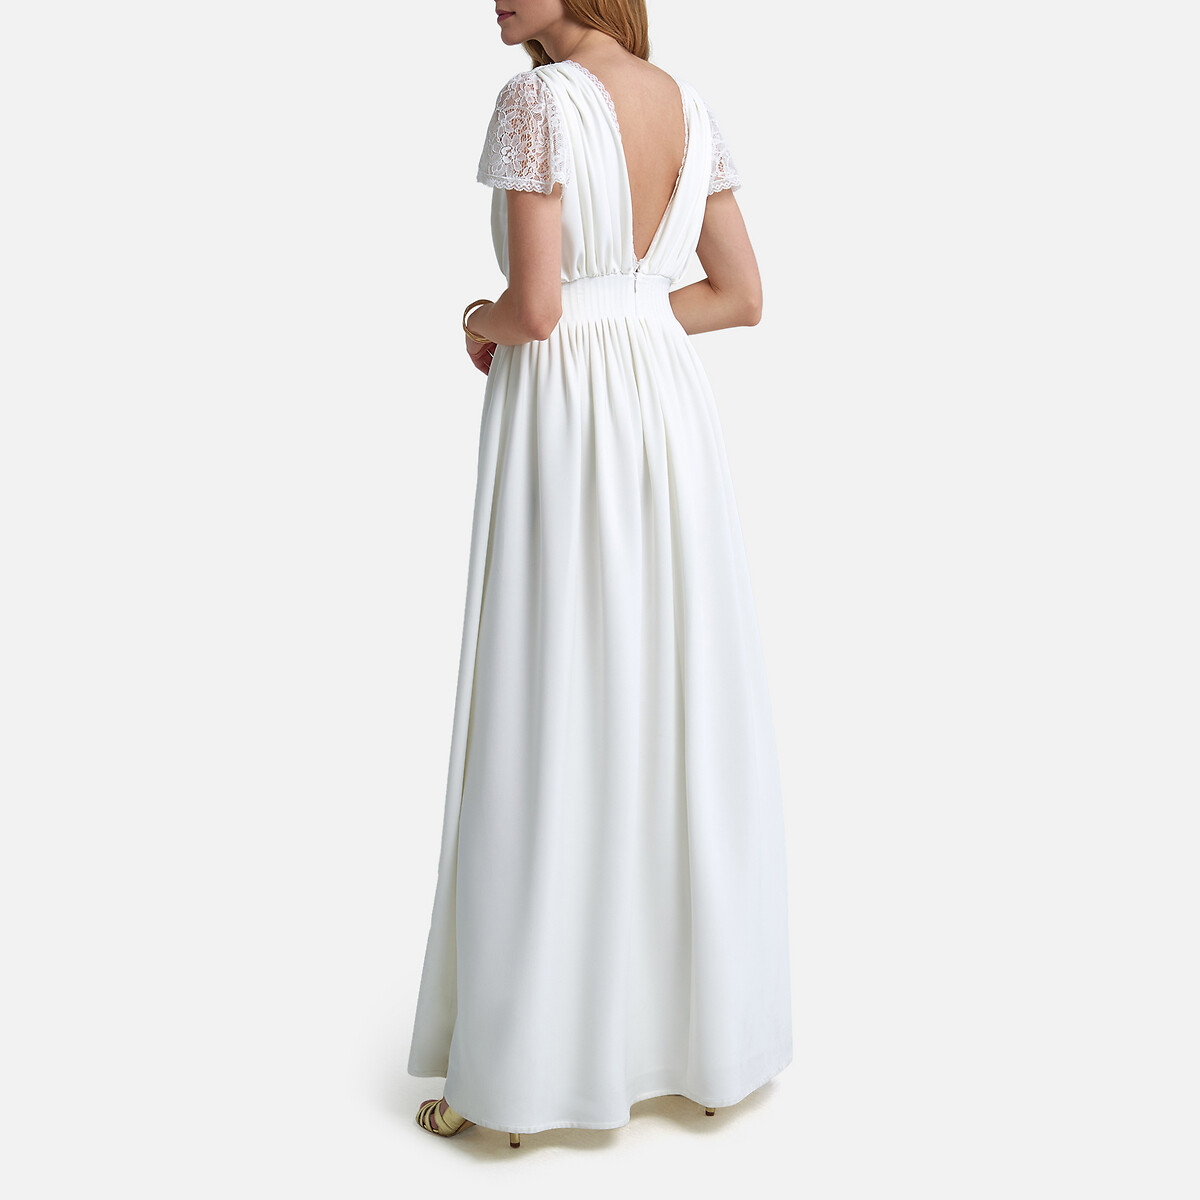 Платье La Redoute Невесты длинное короткие кружевные рукава 42 (FR) - 48 (RUS) белый, размер 42 (FR) - 48 (RUS) Невесты длинное короткие кружевные рукава 42 (FR) - 48 (RUS) белый - фото 3